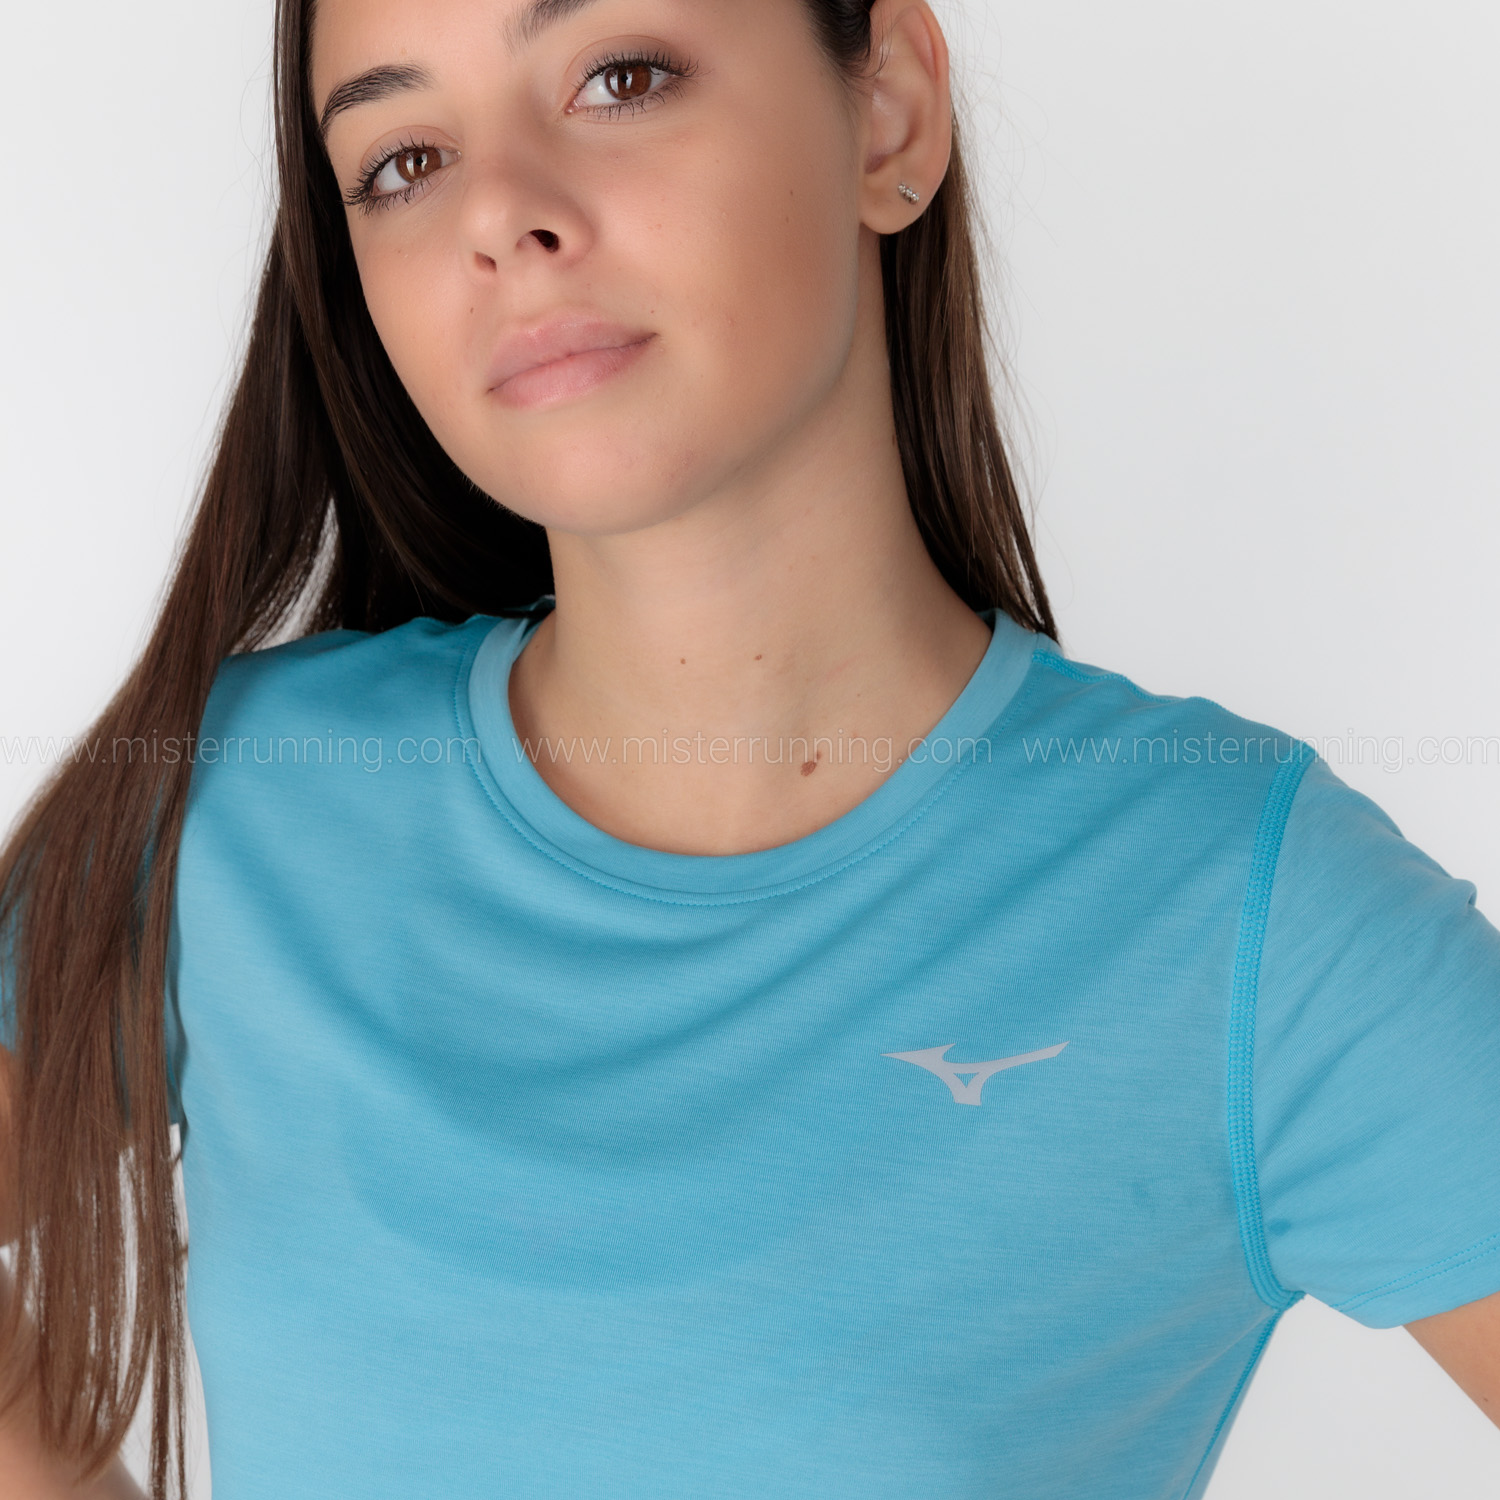 Accor Comedia de enredo Murmullo Mizuno Impulse Core Camiseta de Running Mujer - Maui Blue